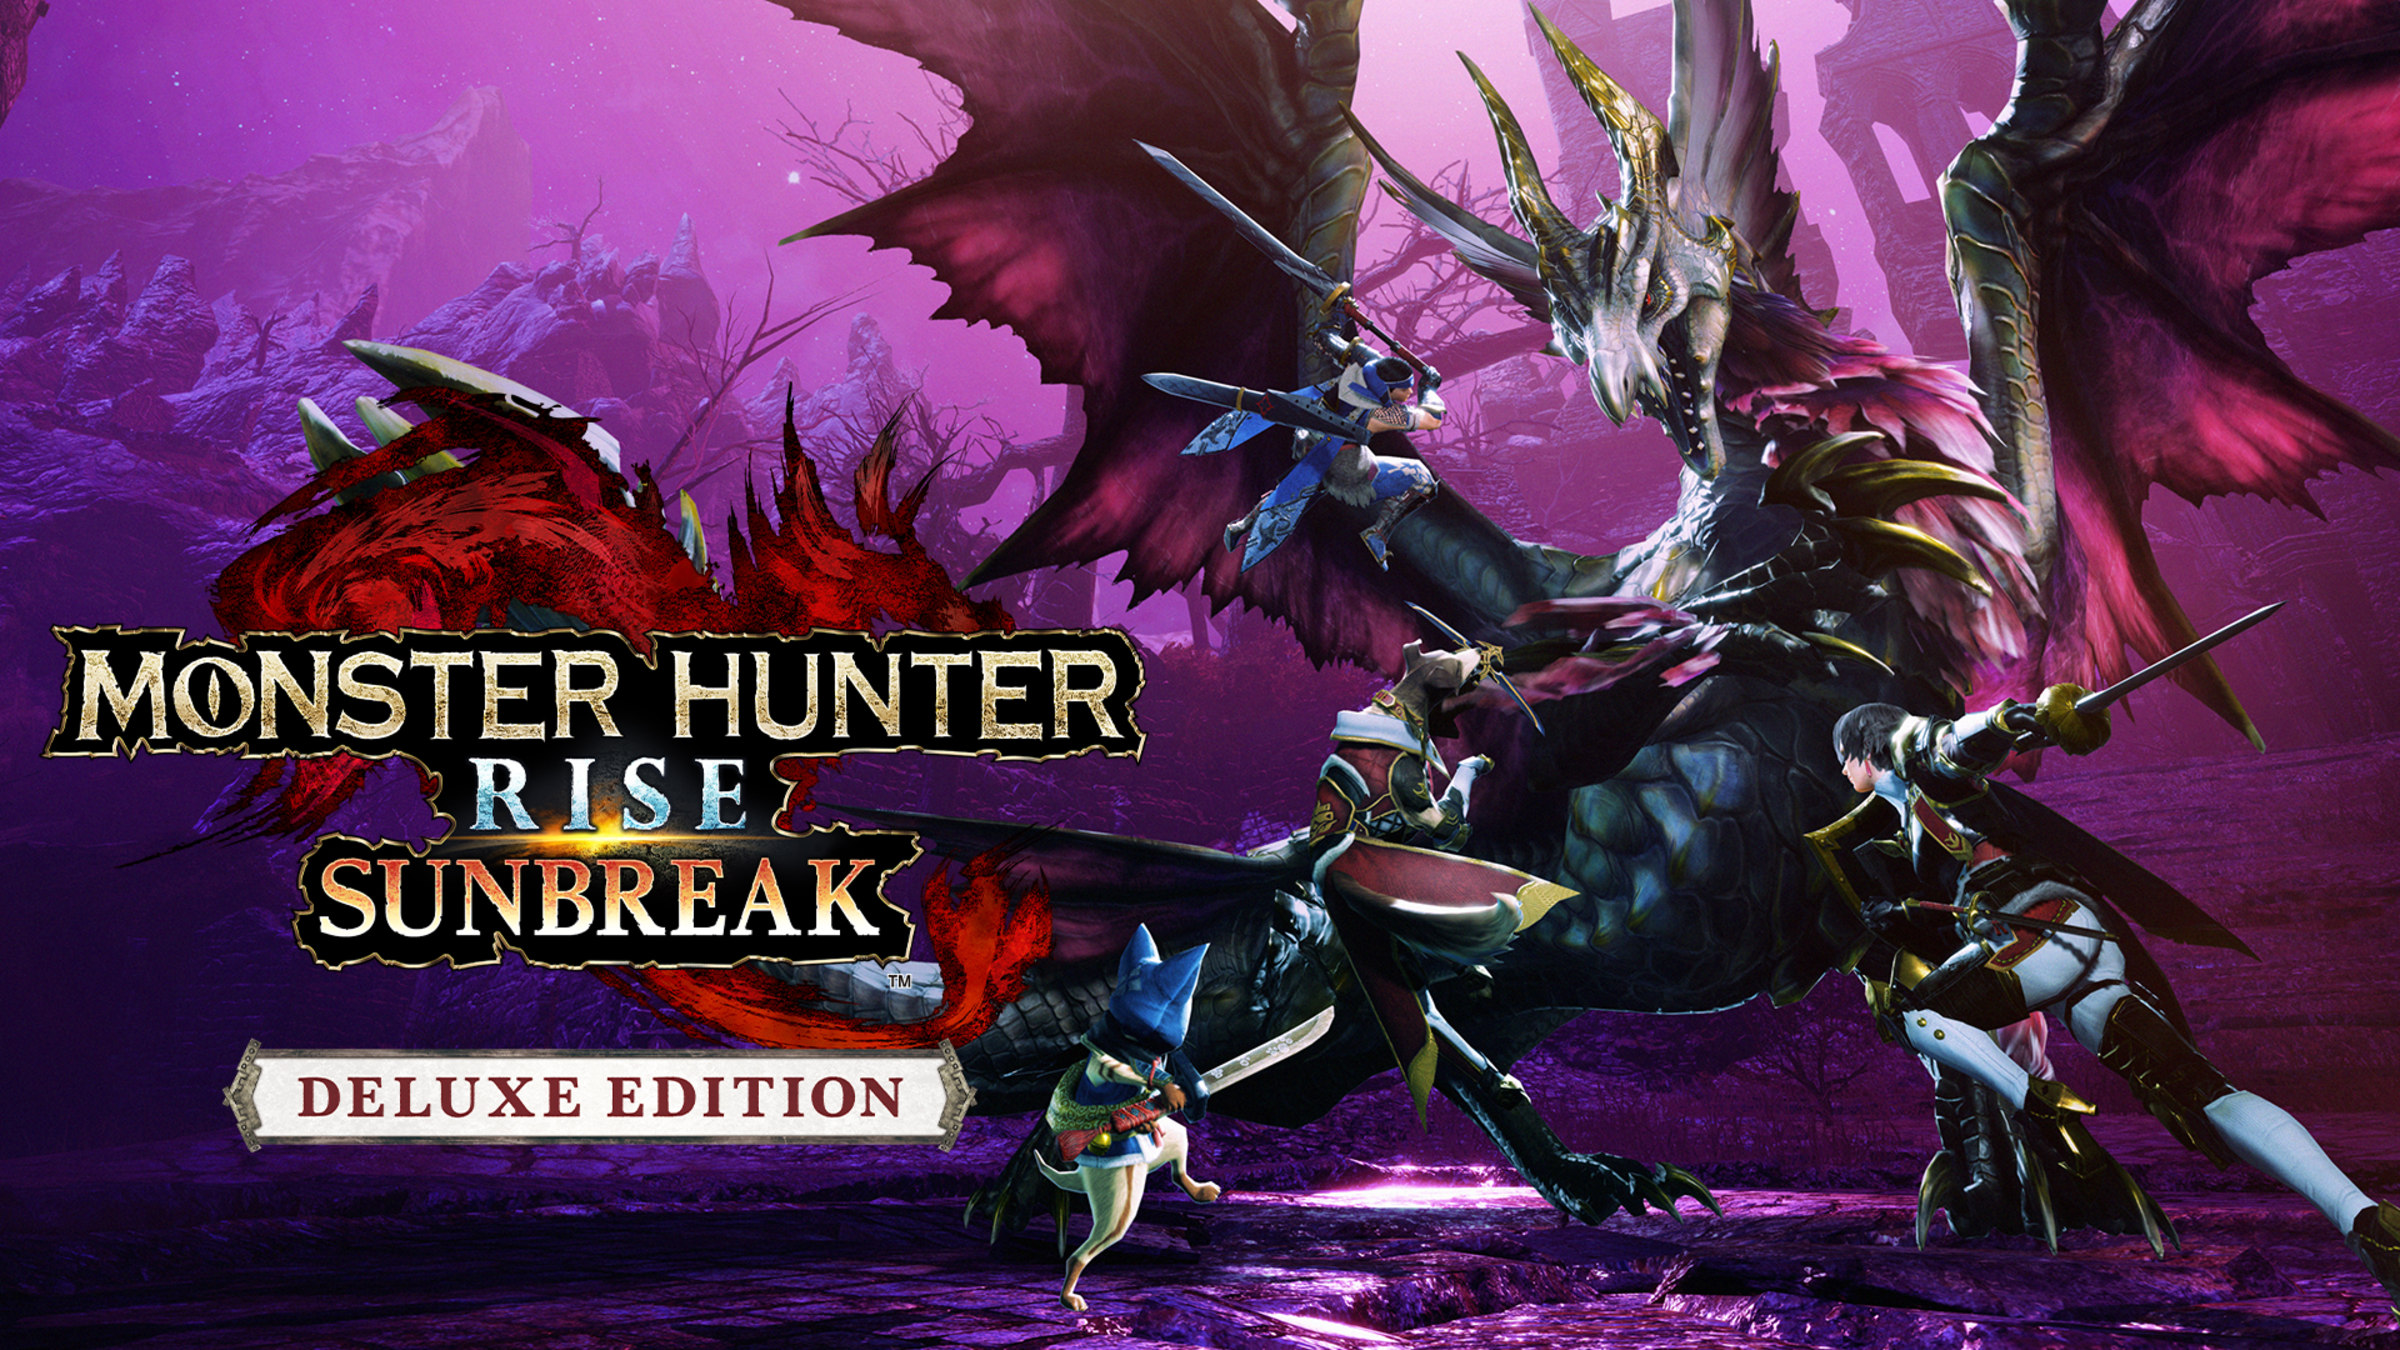  Monster Hunter Rise + Sunbreak set (Nintendo Switch) : Video  Games